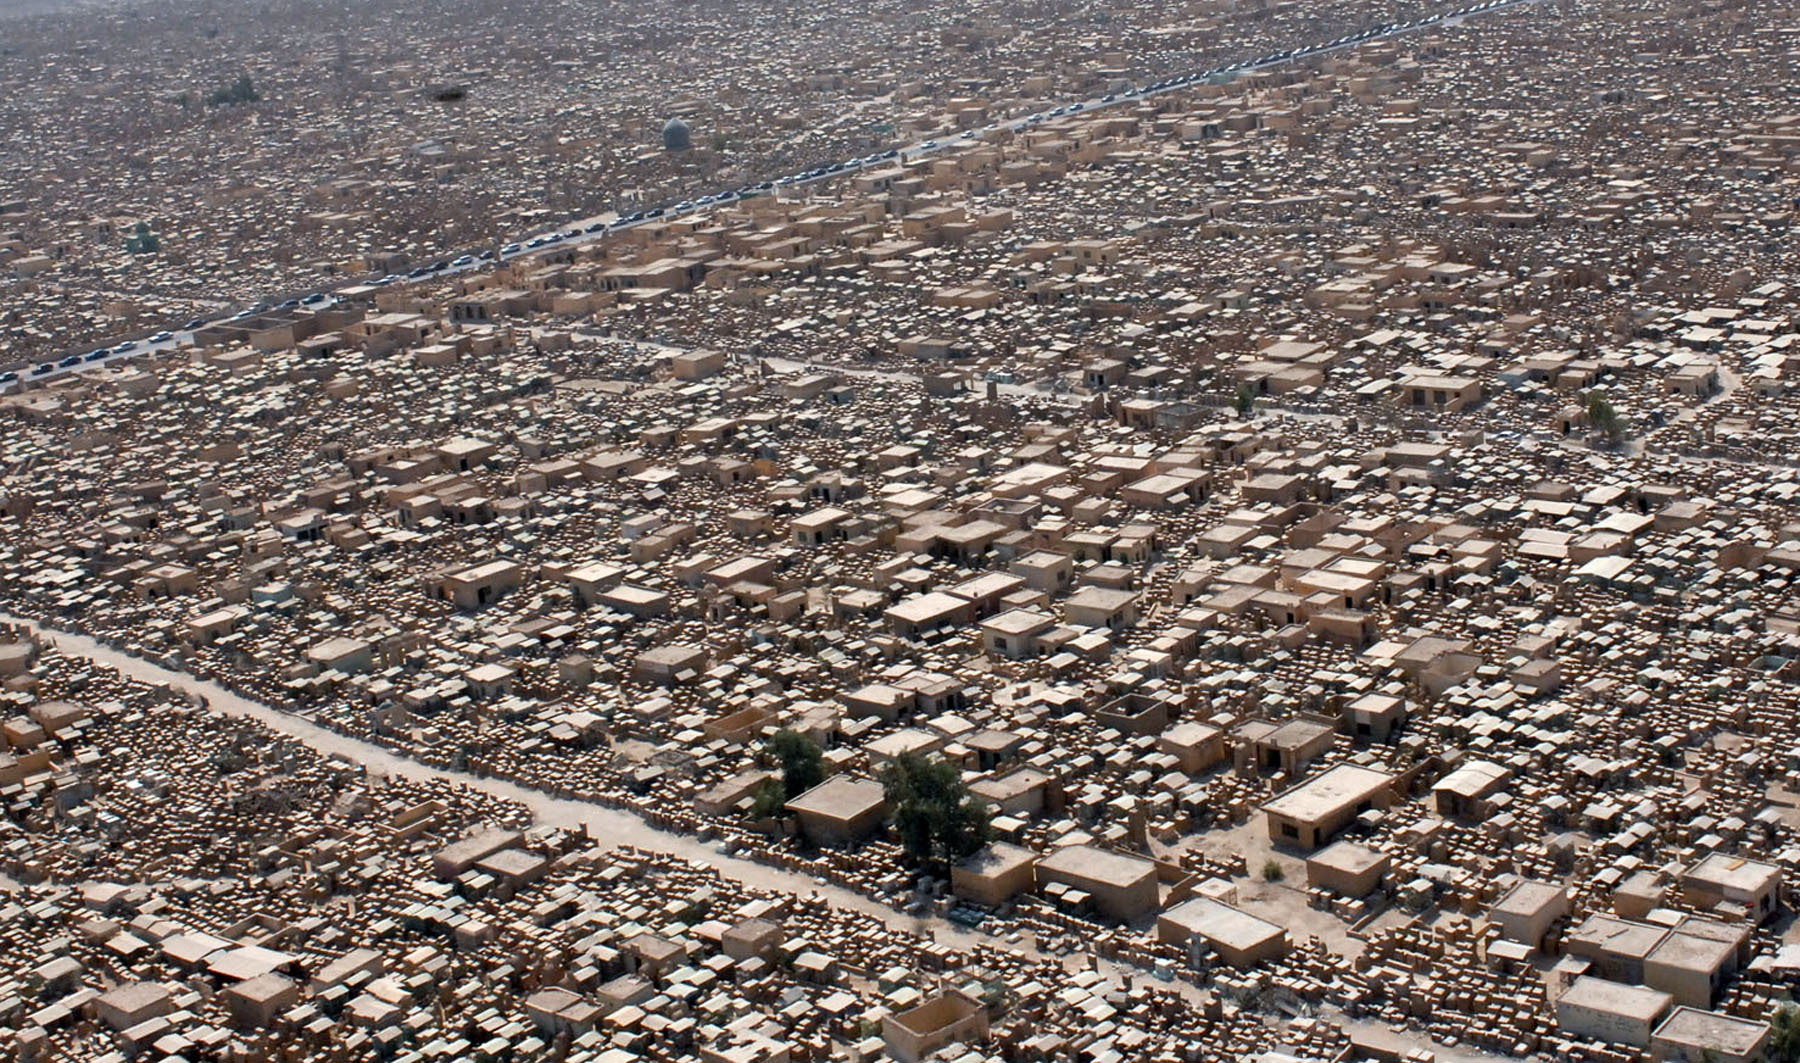 Wadi Al-Salaam, cel mai mare cimitir din lume